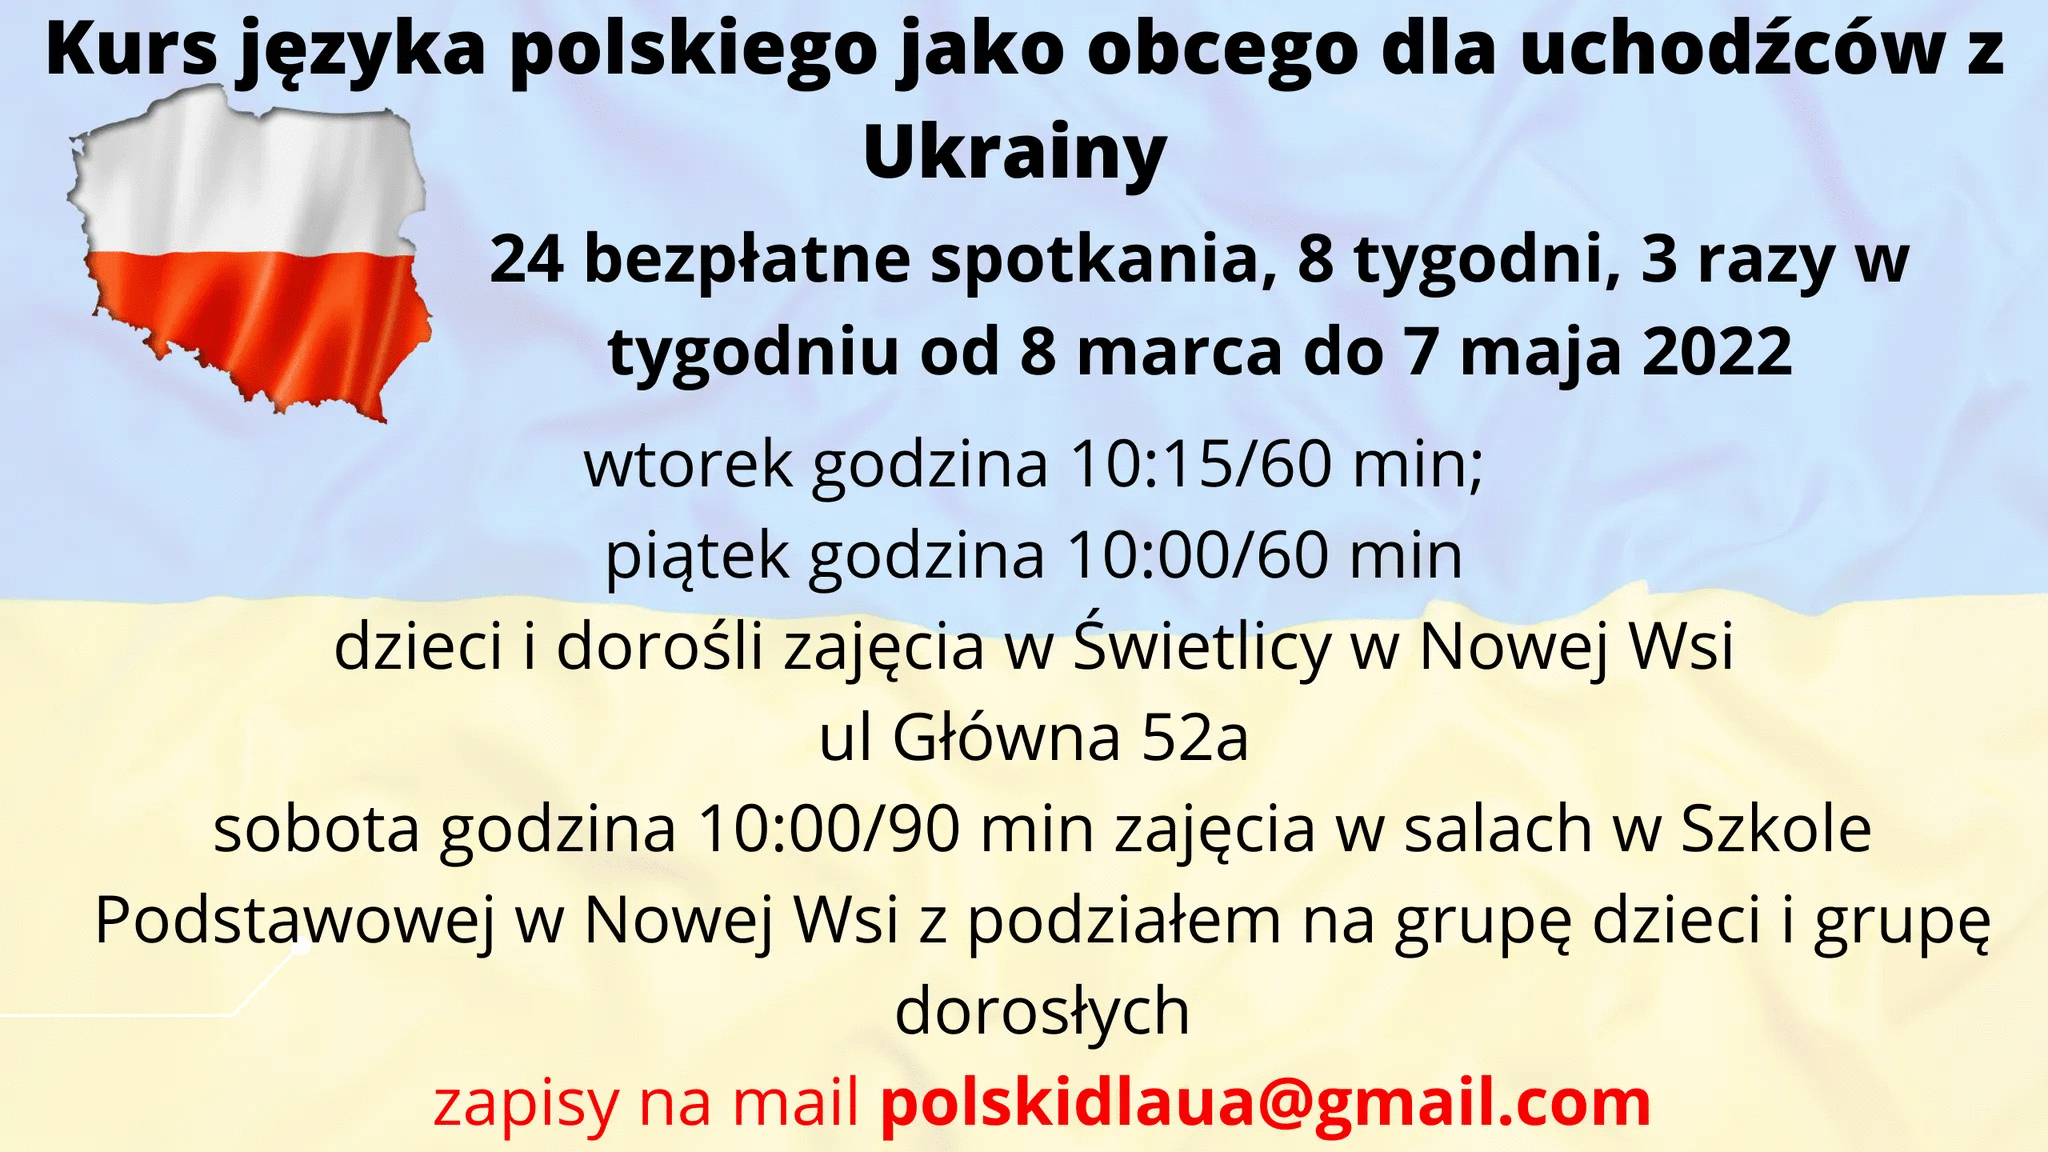 grfaika prezentująca zaproszenie - polski